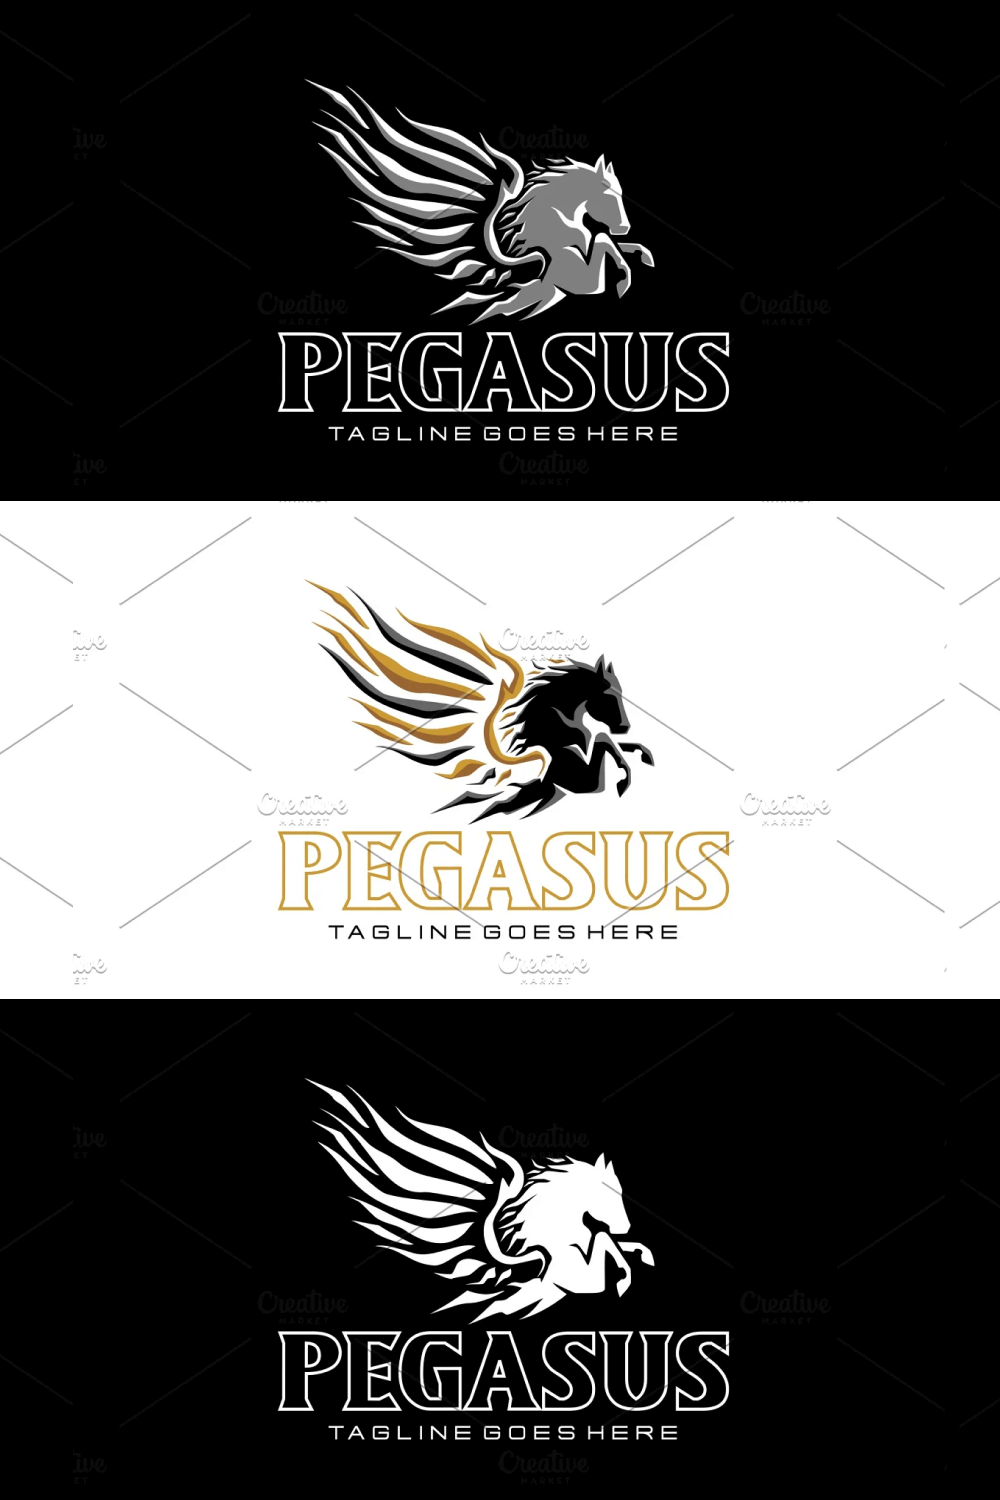 Pegasus logo circle logo.